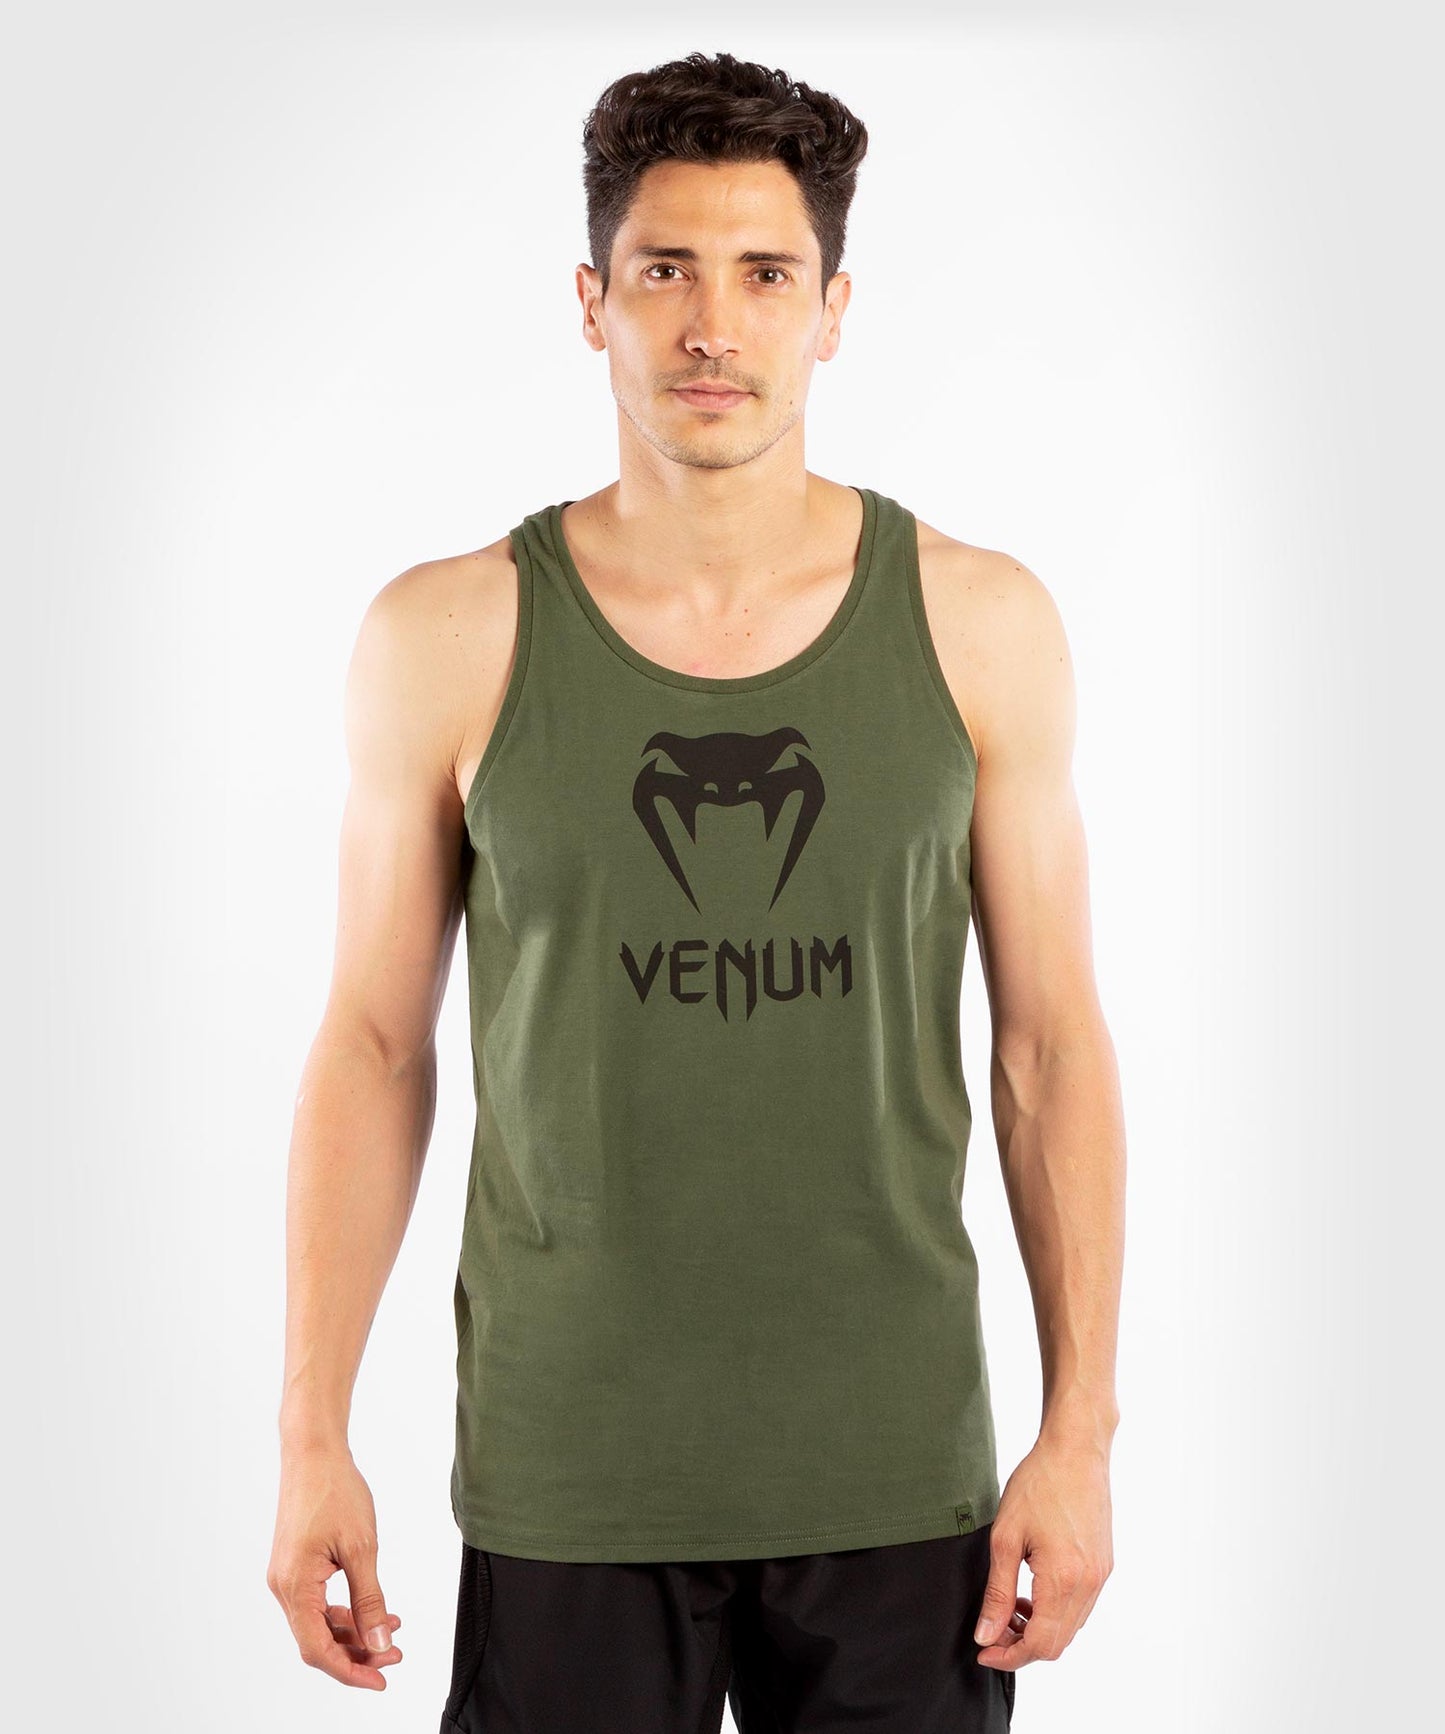 Camiseta sin mangas Venum Classic - Caqui